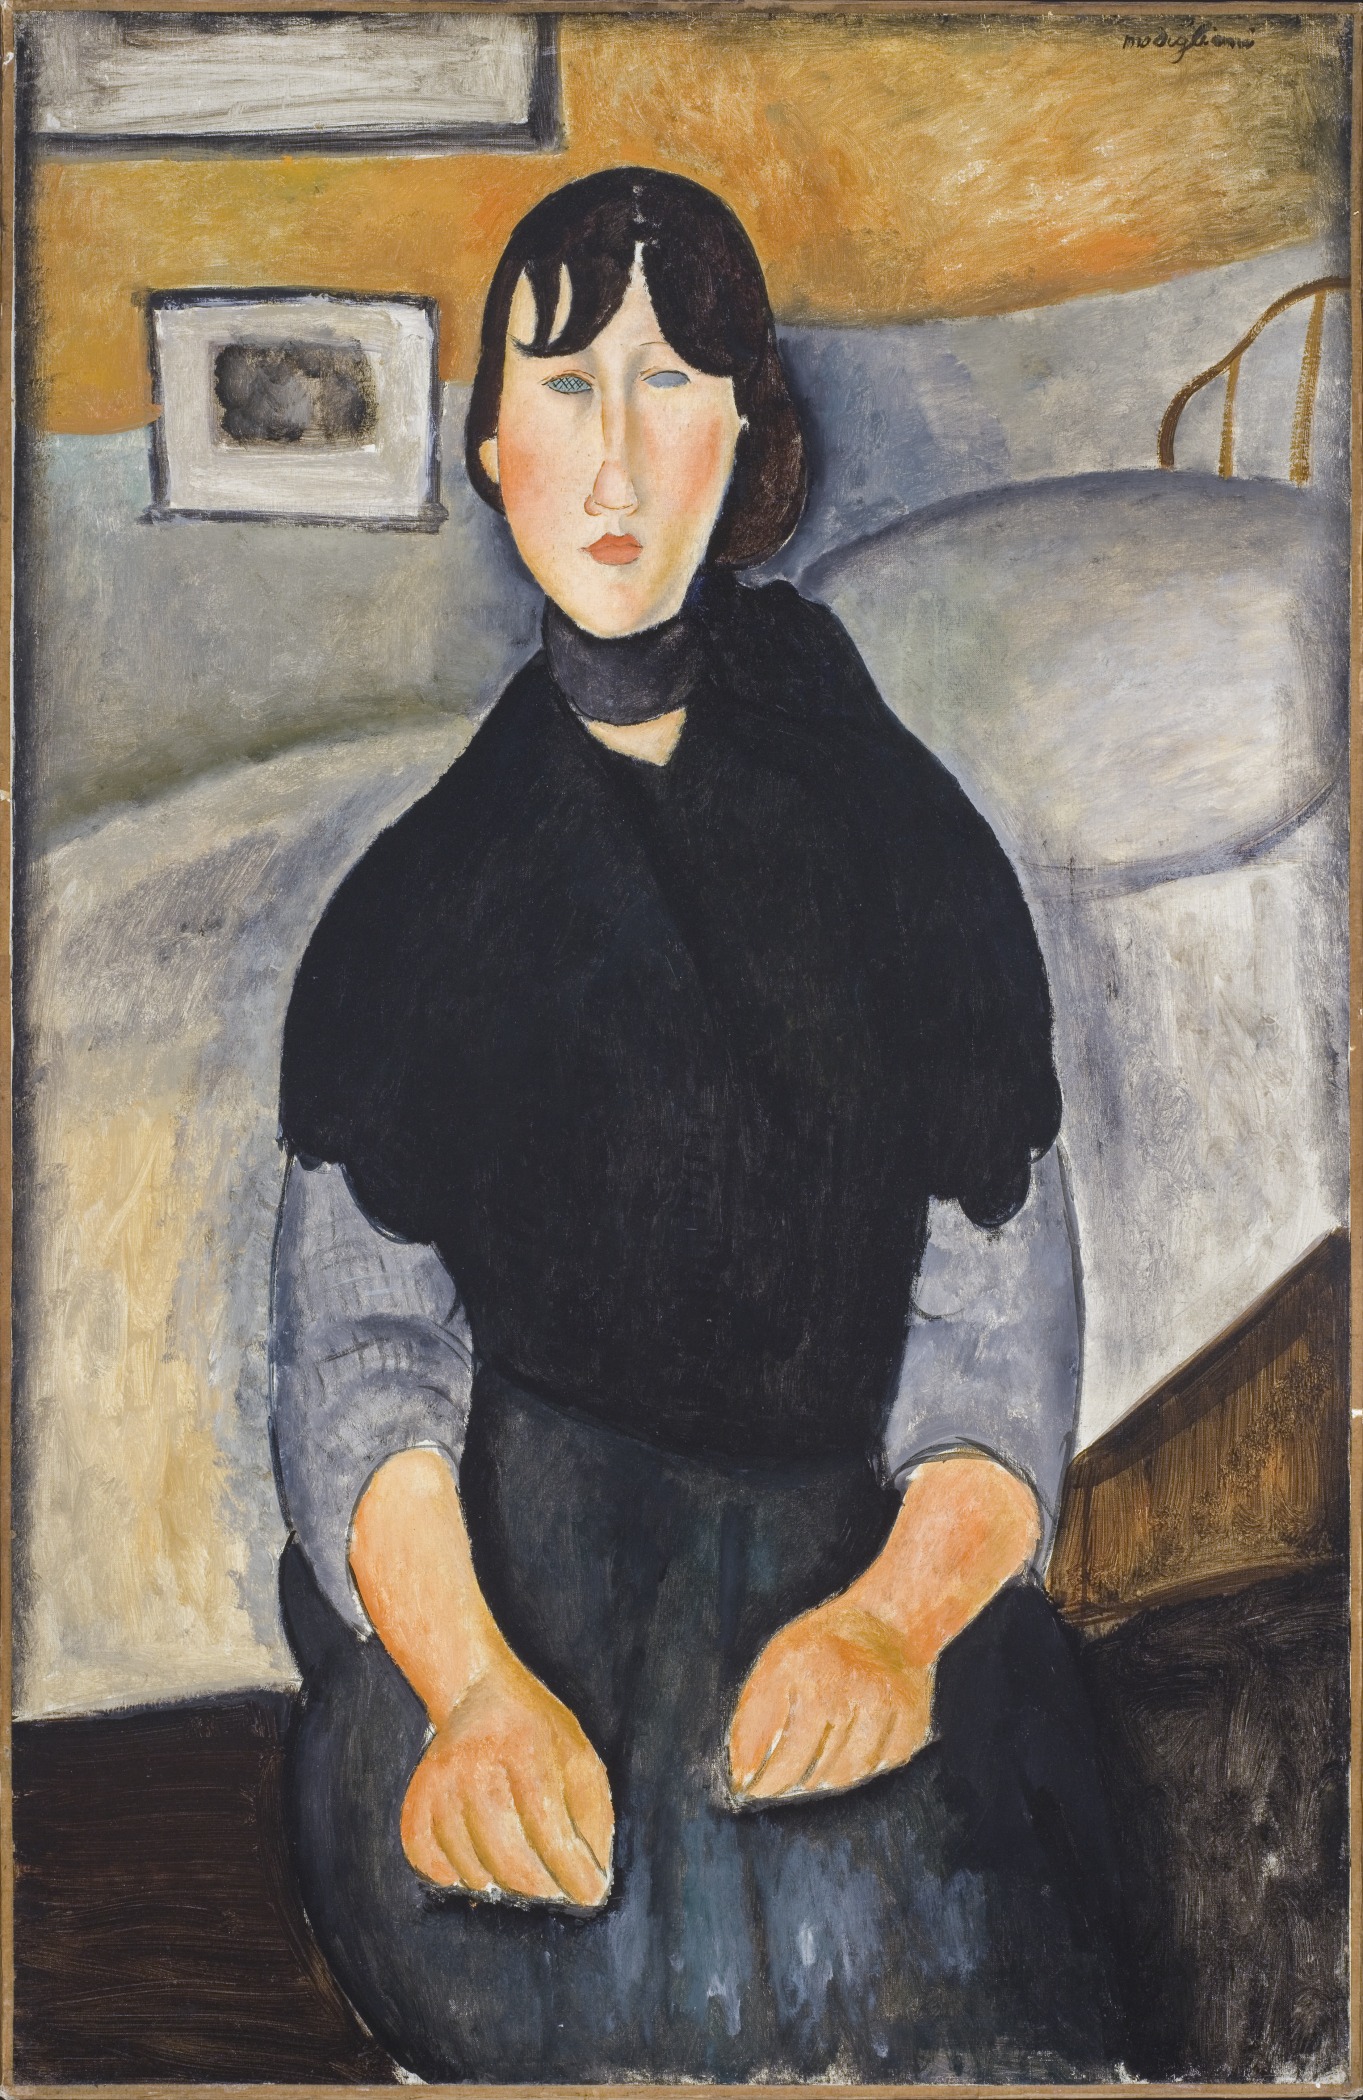 Mladá žena z lidu by Amedeo Modigliani - 1918 - 89,535 x 64,135 cm 